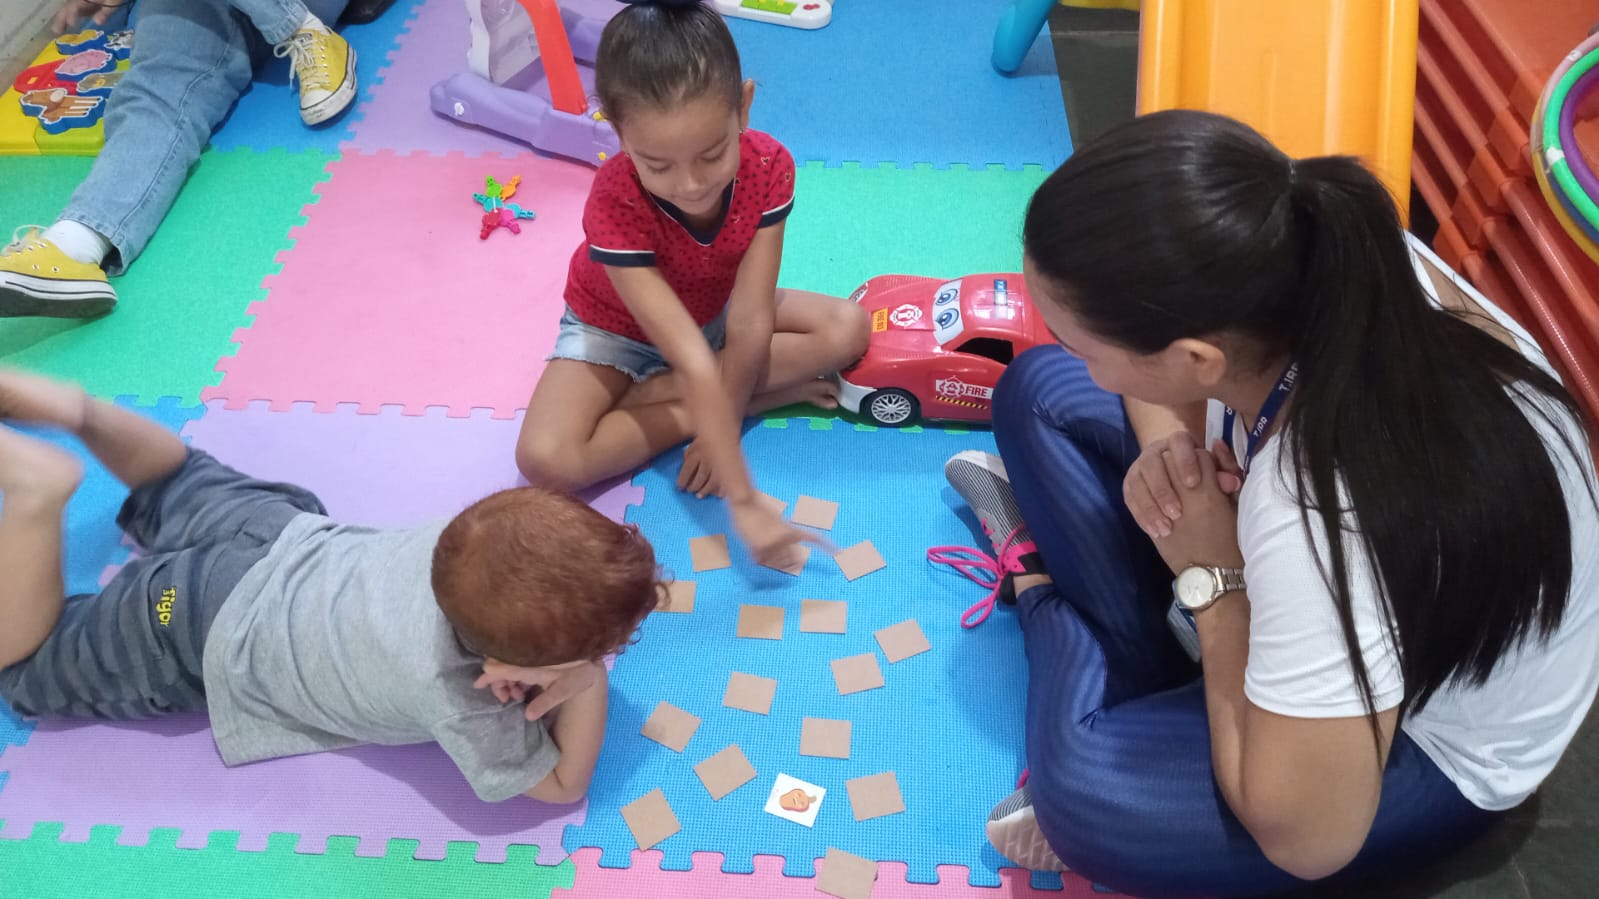 SAÚDE EM FAMÍLIA - Centro Médico disponibiliza espaço kids para filhos de servidores durante atividades físicas